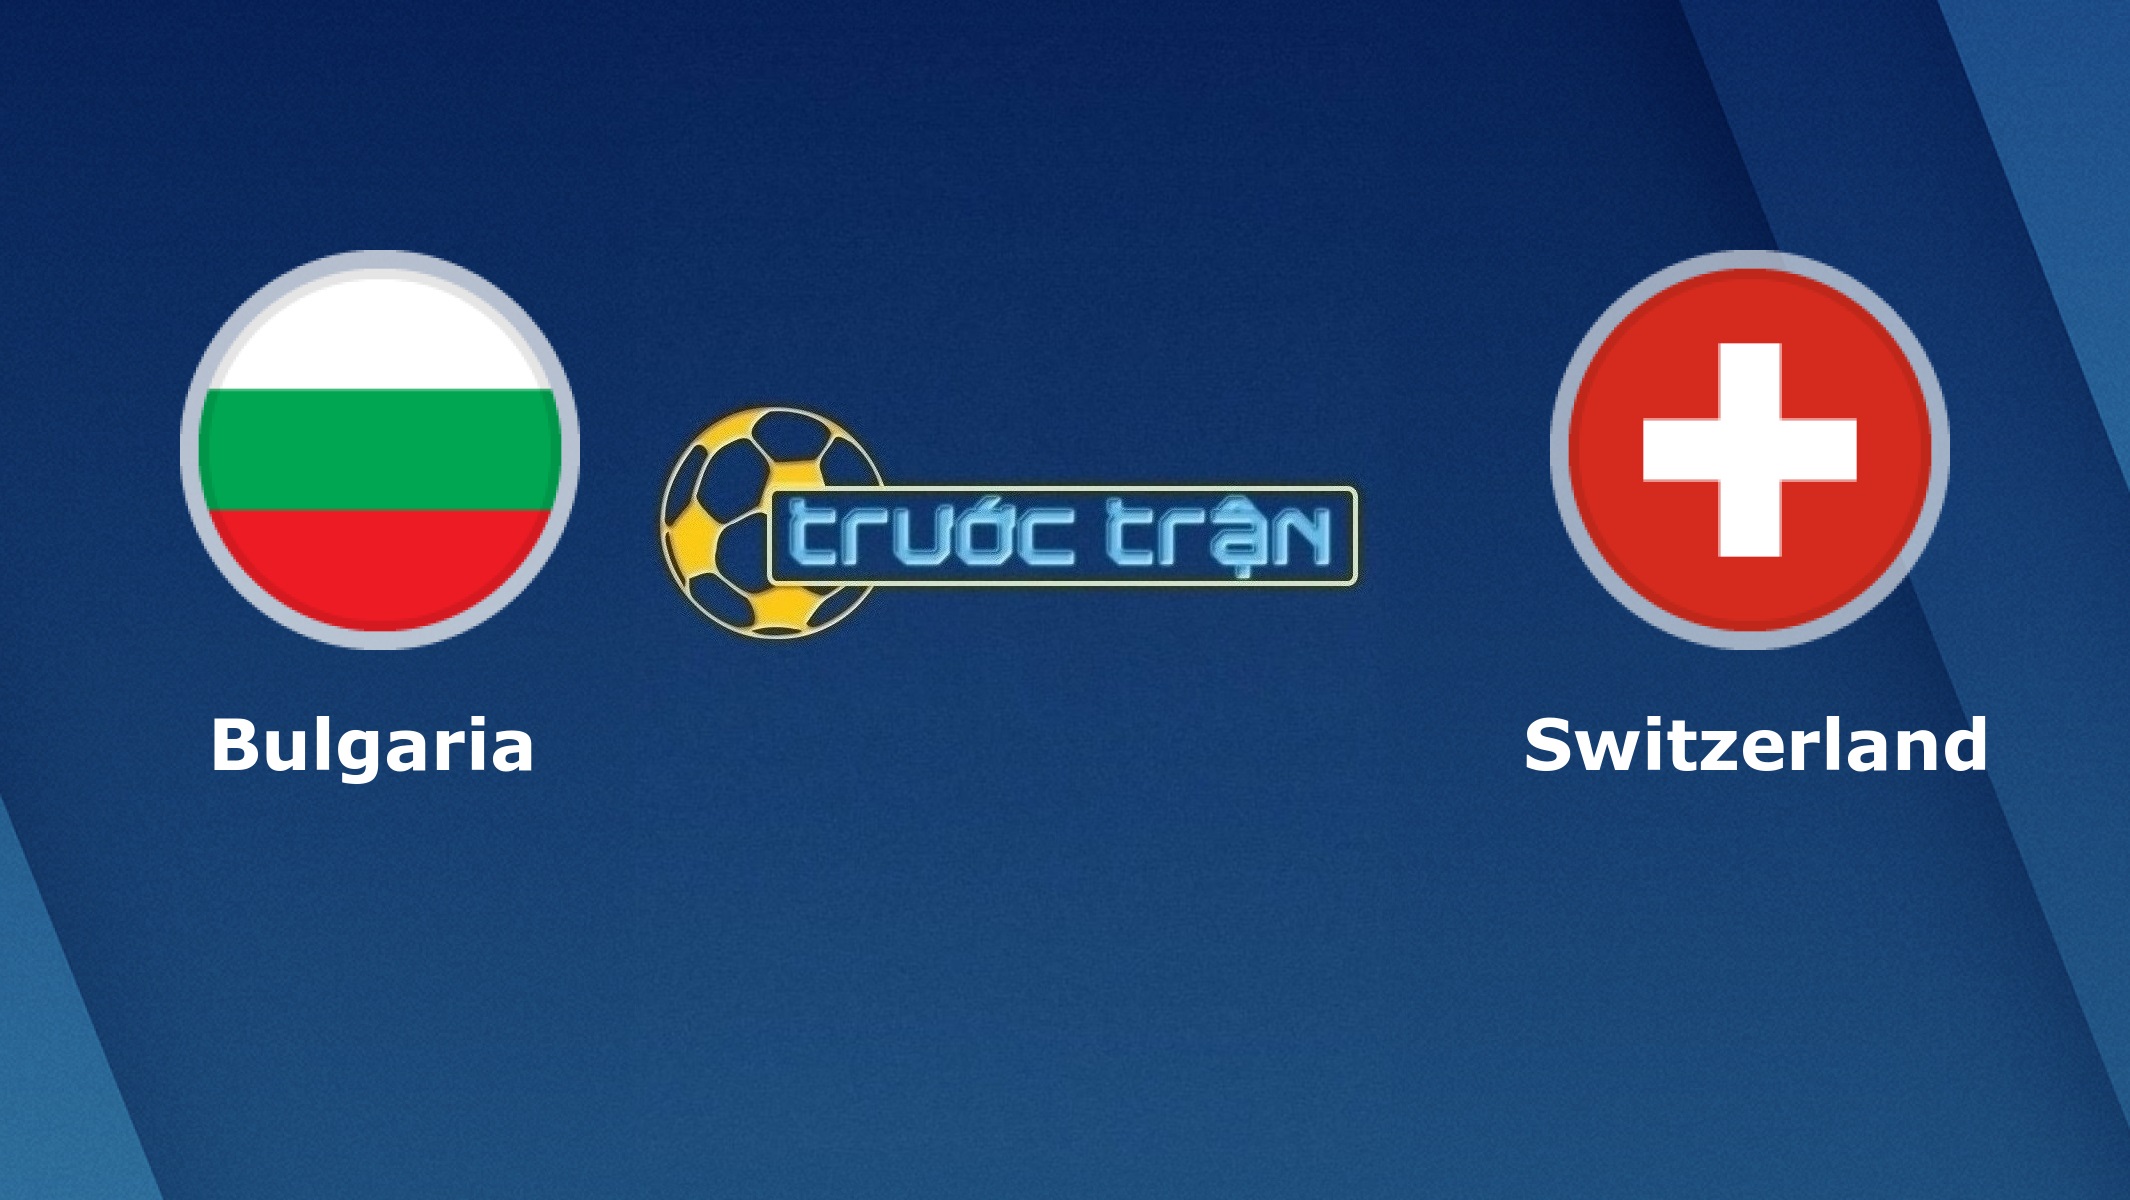 Bulgaria vs Thụy sĩ – Tip kèo bóng đá hôm nay – 00h00 26/03/2021